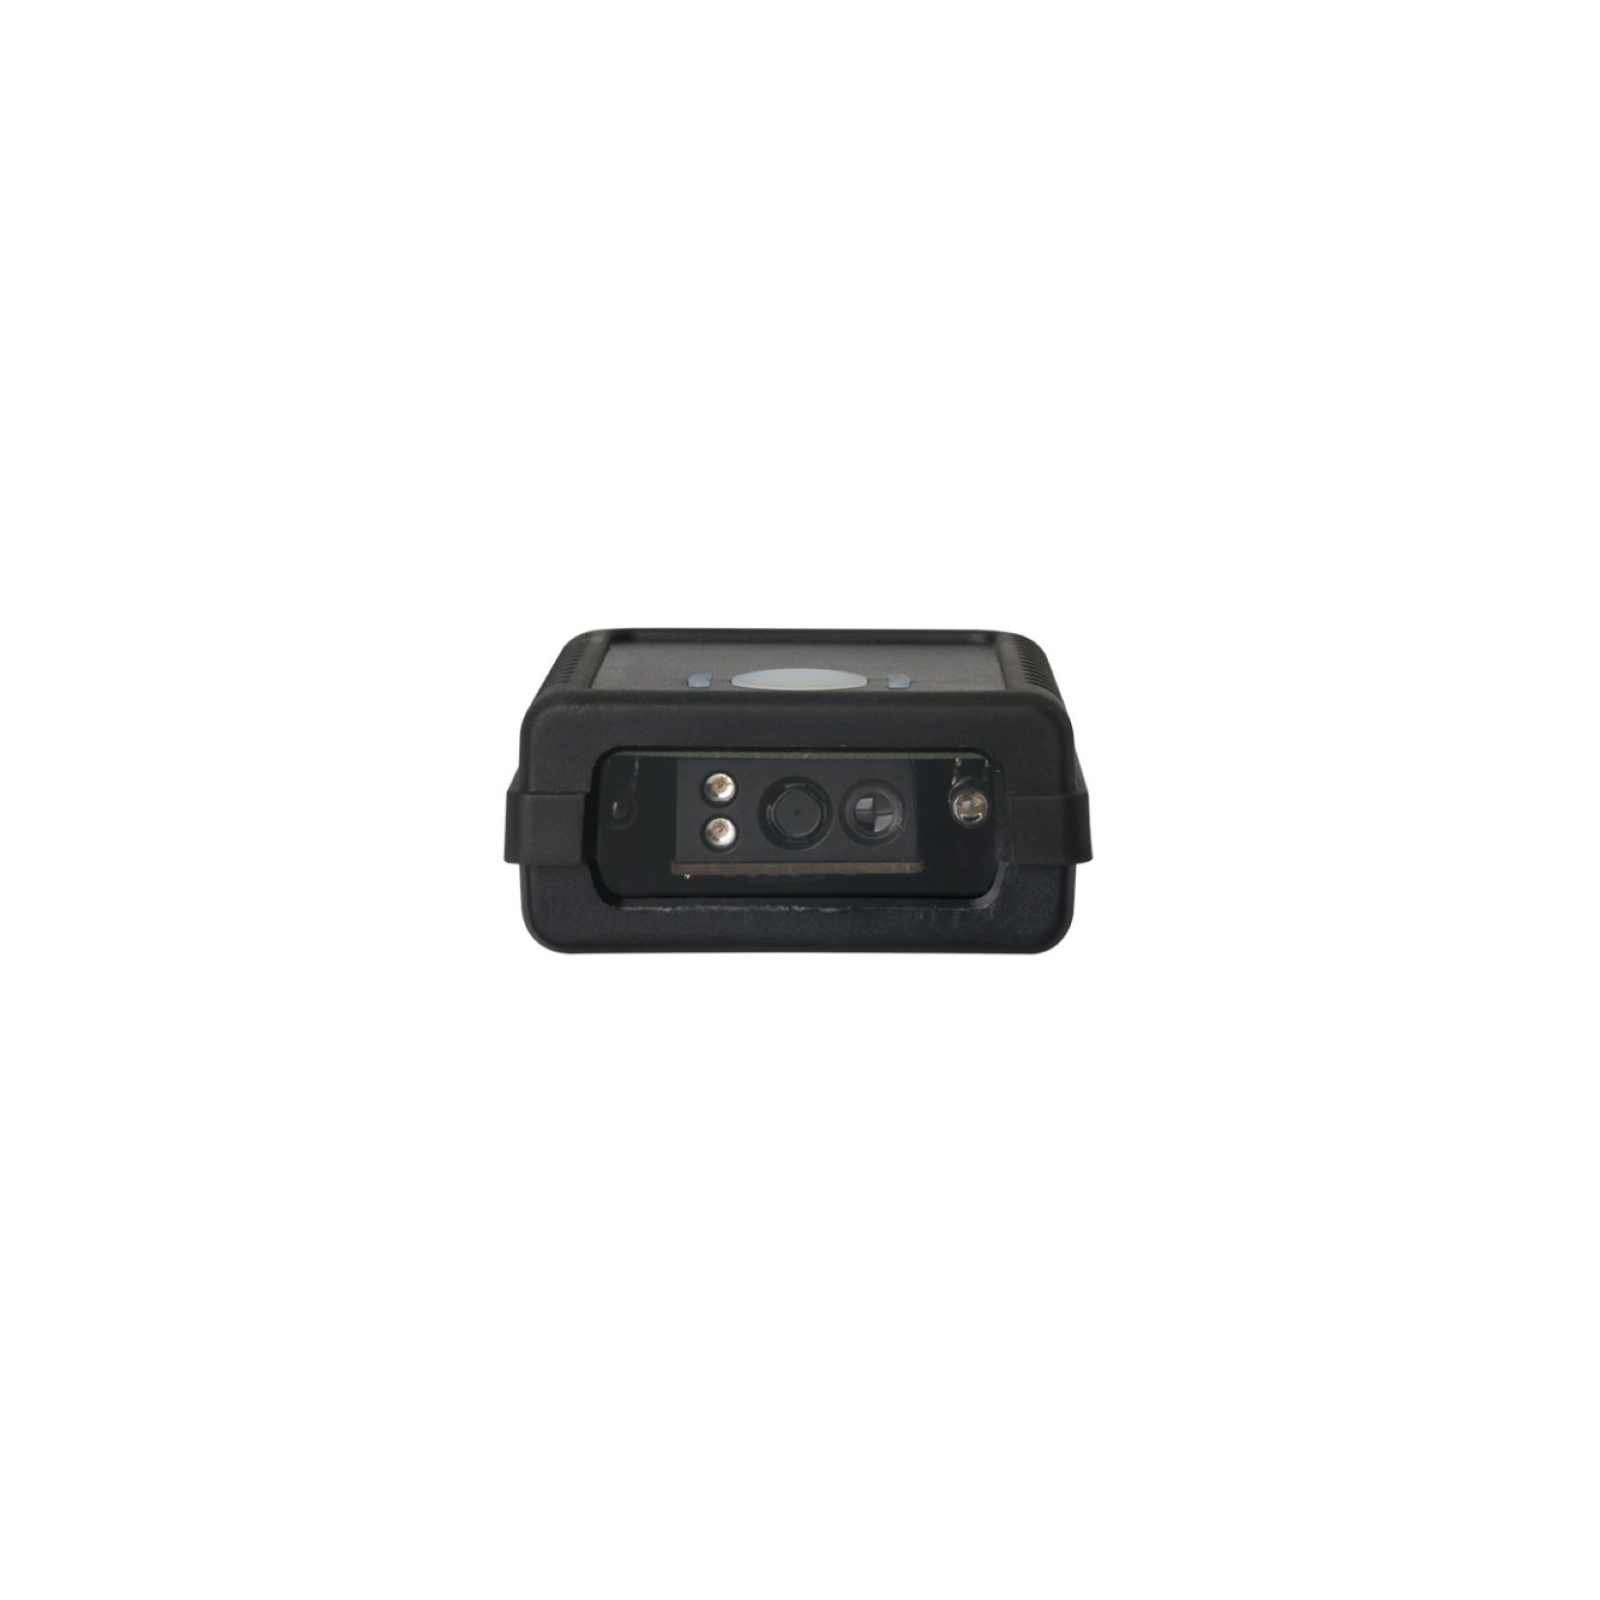 Сканер штрих-кода Xkancode FS20, 2D, USB, black (FS20)